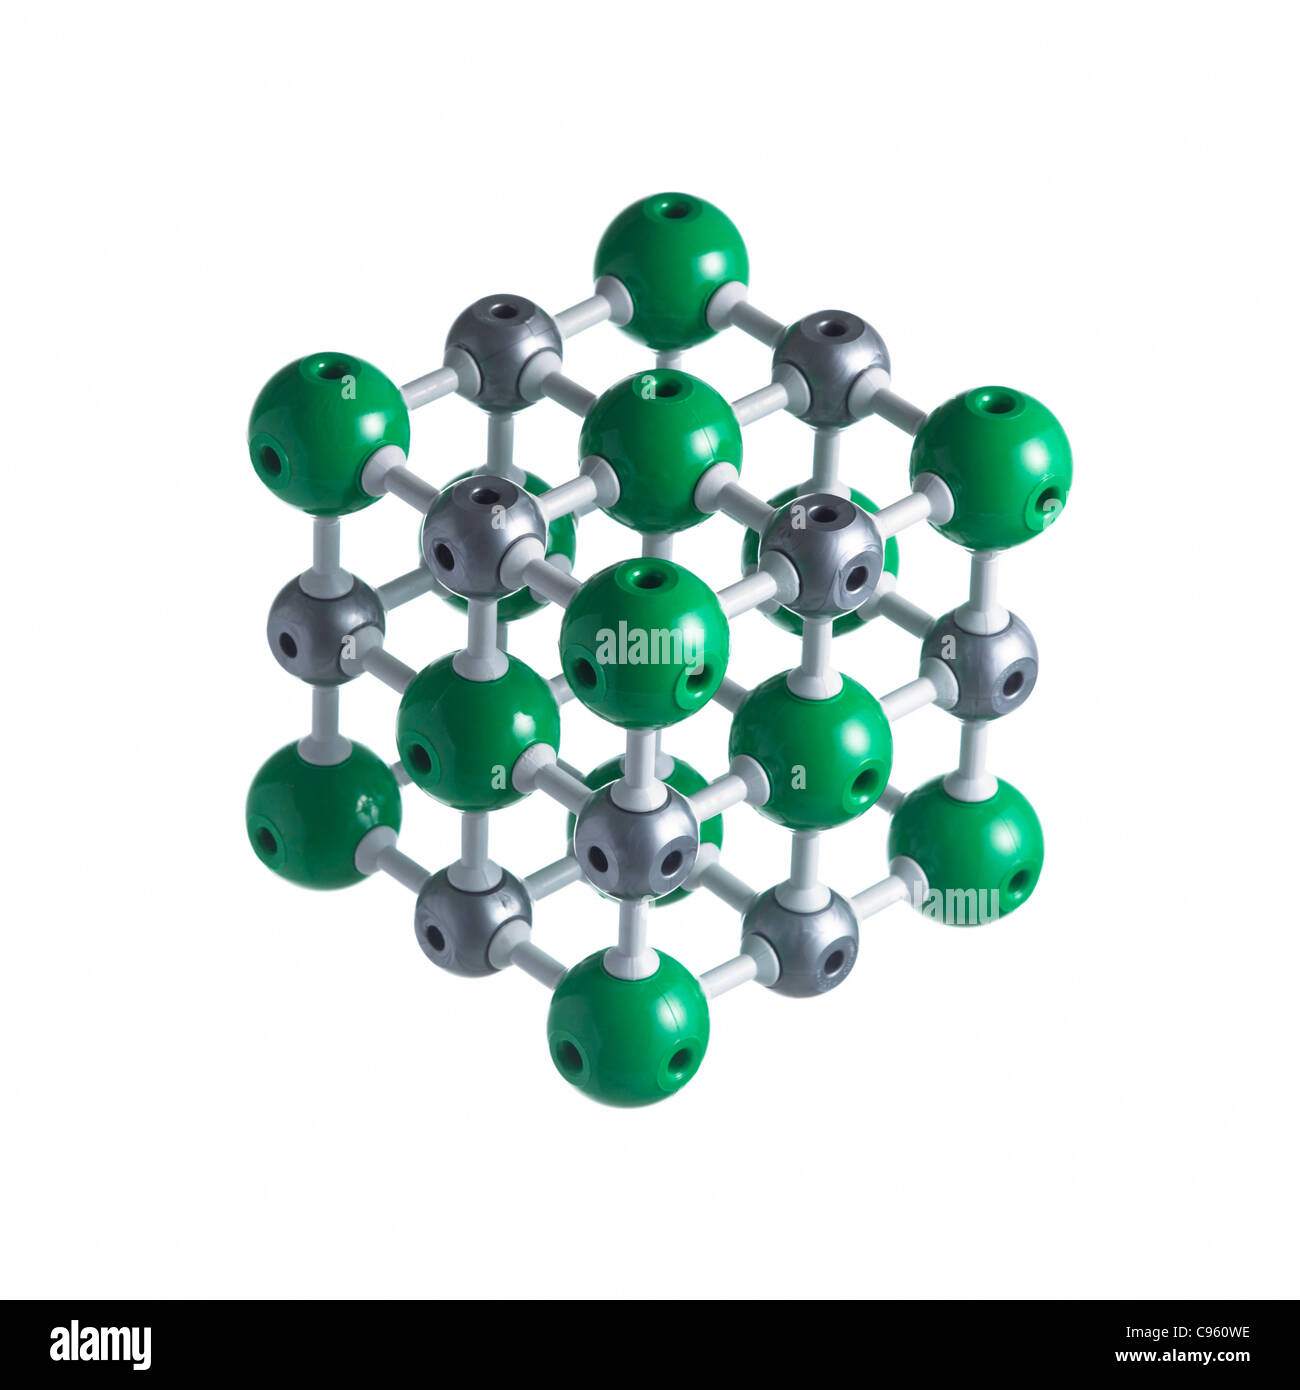 Natriumchlorid-Gitter. Atome als Kugeln dargestellt werden und sind farblich gekennzeichnet: Natrium (Silber) und Chlor (grün). Stockfoto